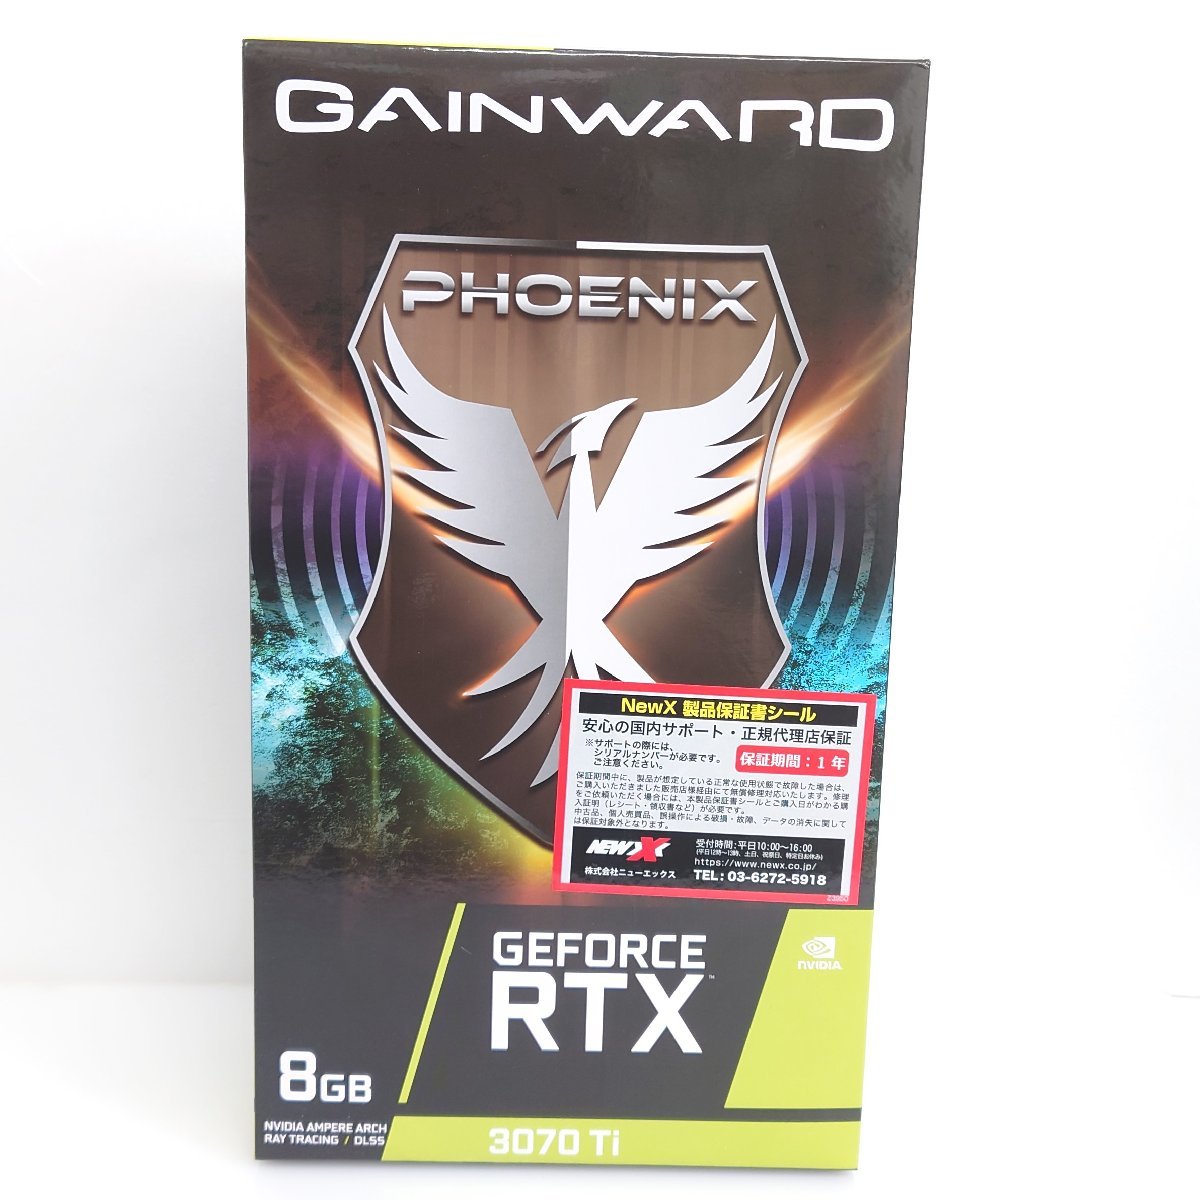 86】新品未開封品 GeForce Gainward ゲインワード グラフィックボード RTX 3070Ti Phoenix 高性能 8GB 注目商品  - www.sumatra.eco.br